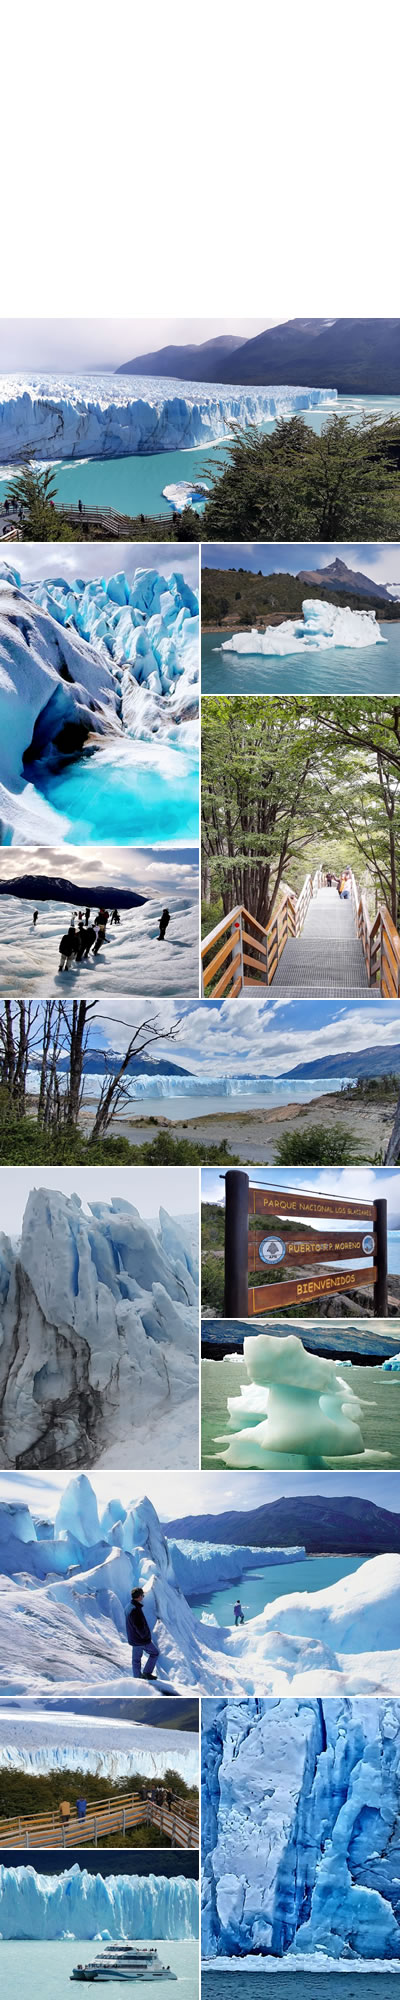 Parque Nacional  Los Glaciares - turismo en el calafate